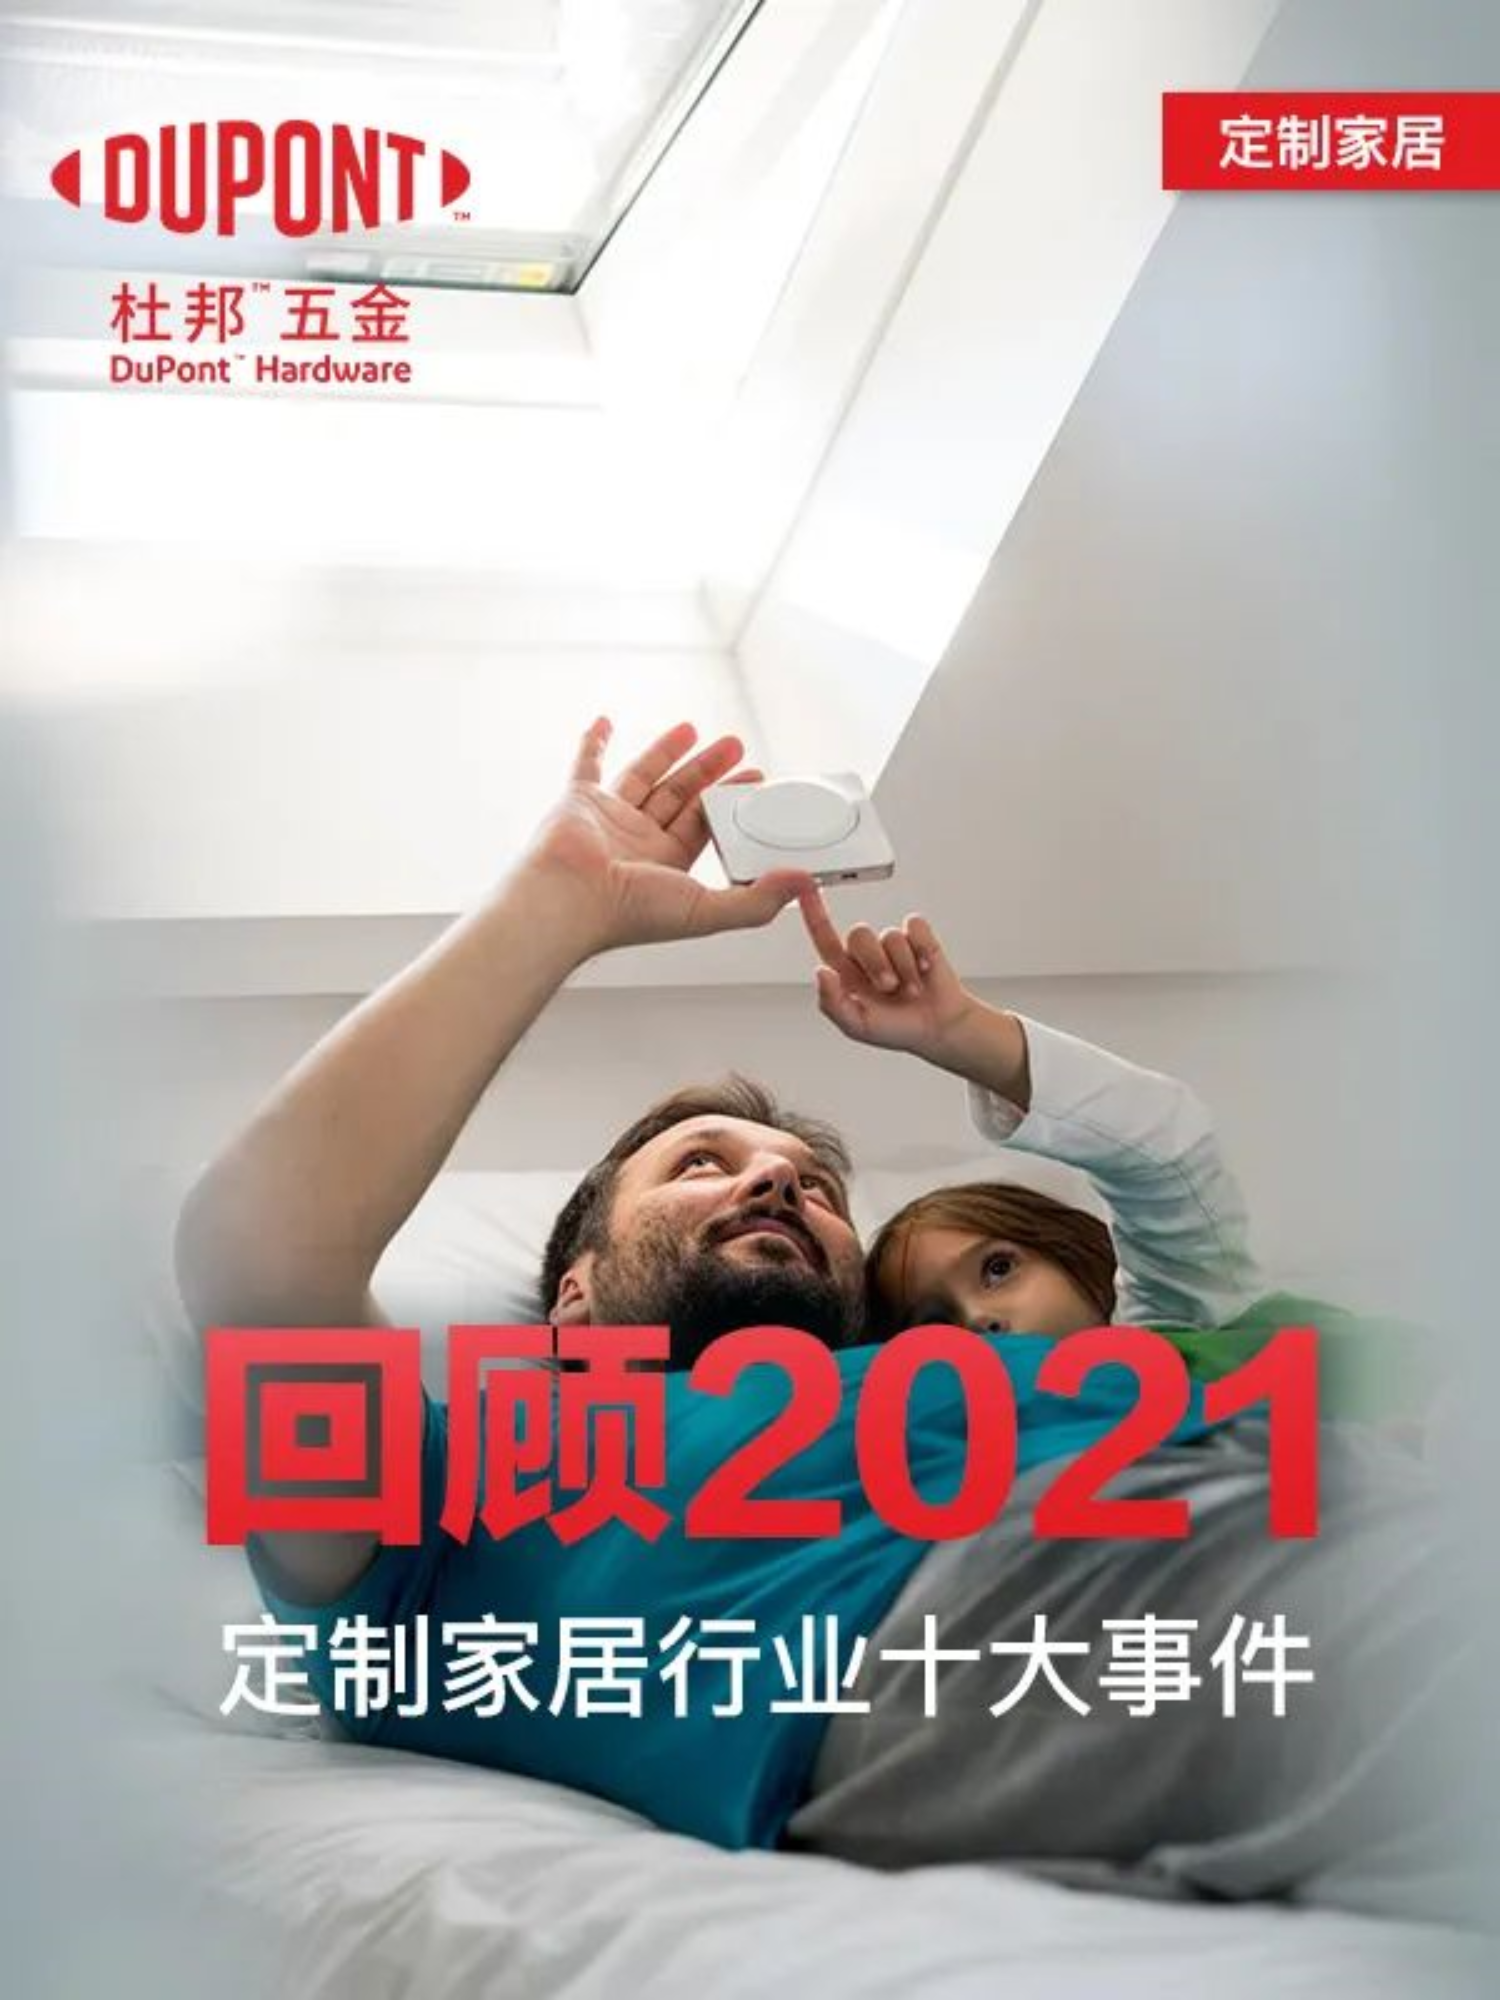 Gennemgang af de 10 bedste tilpassede boligindretninger i Kina i 2021!